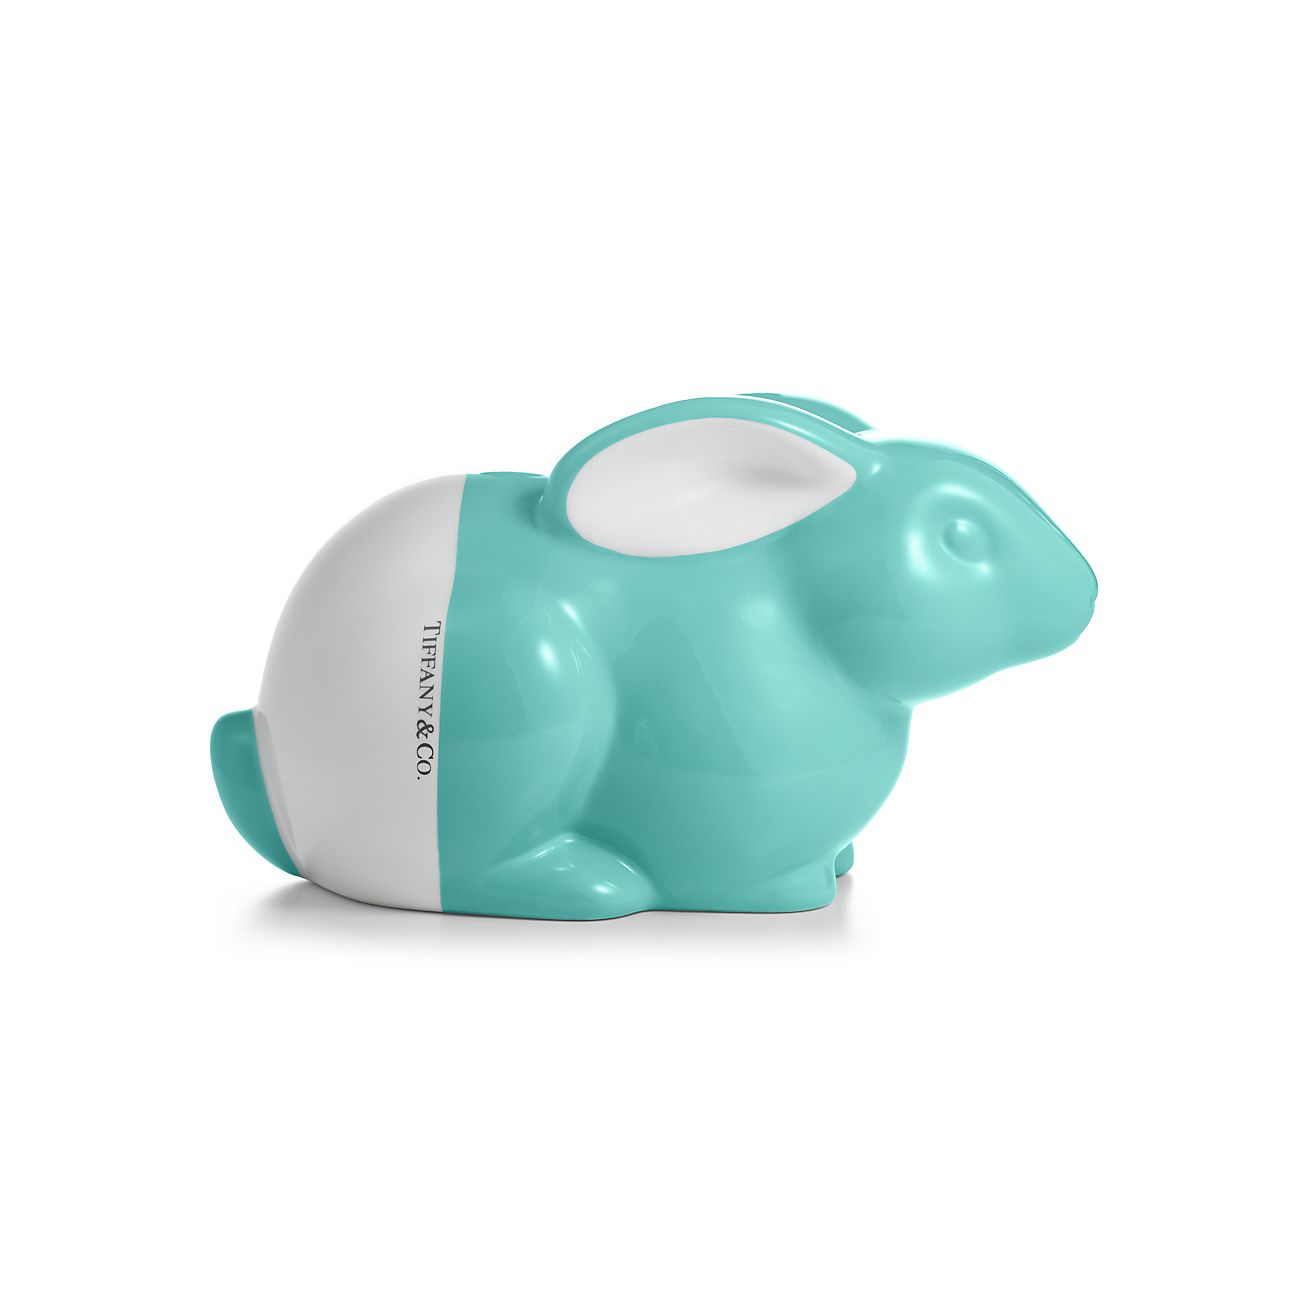 Color Block bunny bank in earthenware. | Tiffany & Co.